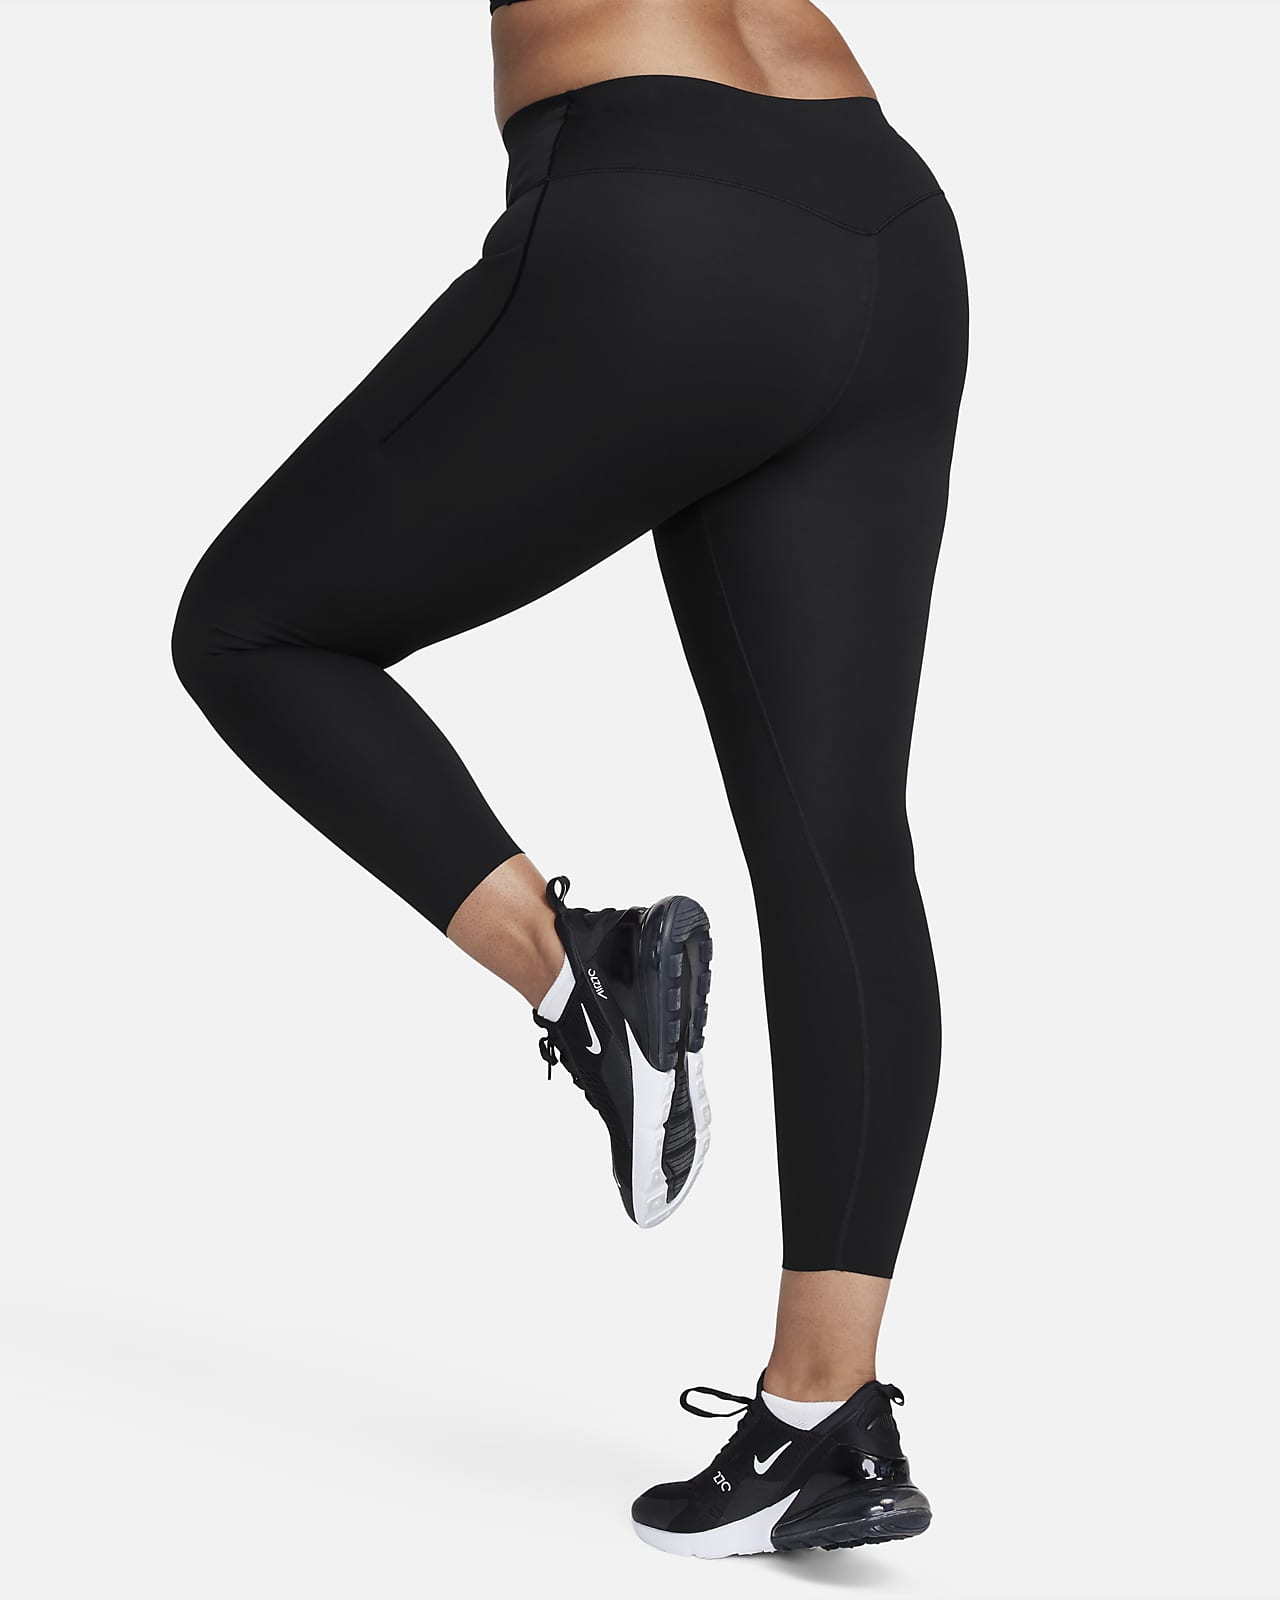 Legginsy Nike Dri-FIT One Damskie, Buty piłkarskie, sprzęt i akcesoria